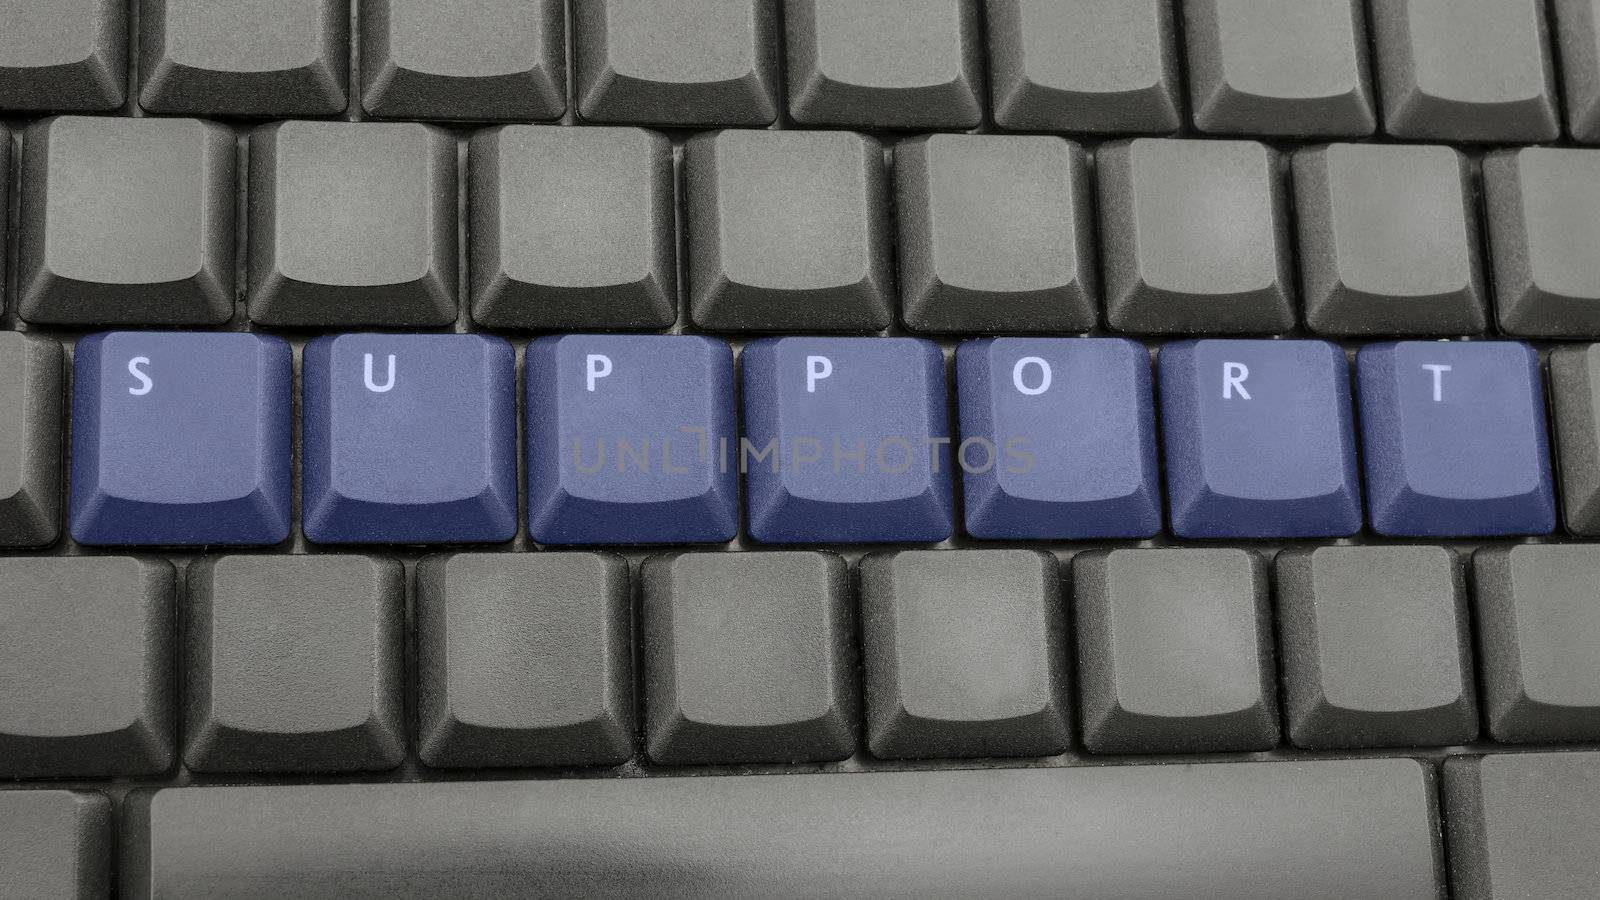 Word support written on black keyboard.